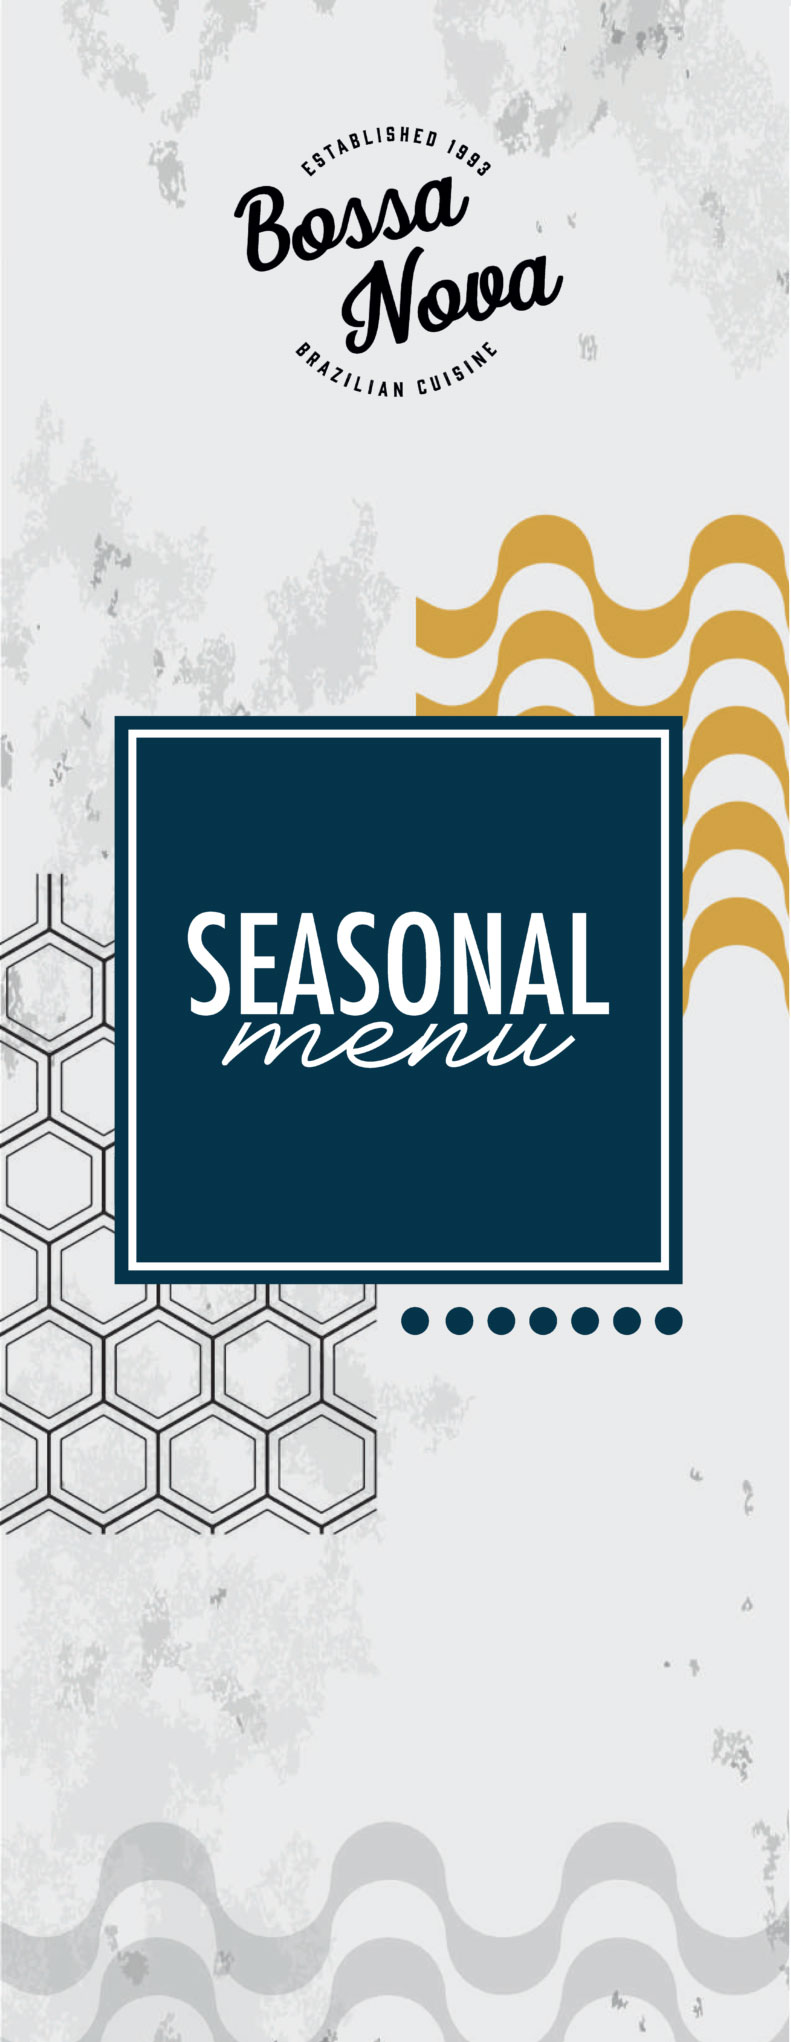 seasonal menu